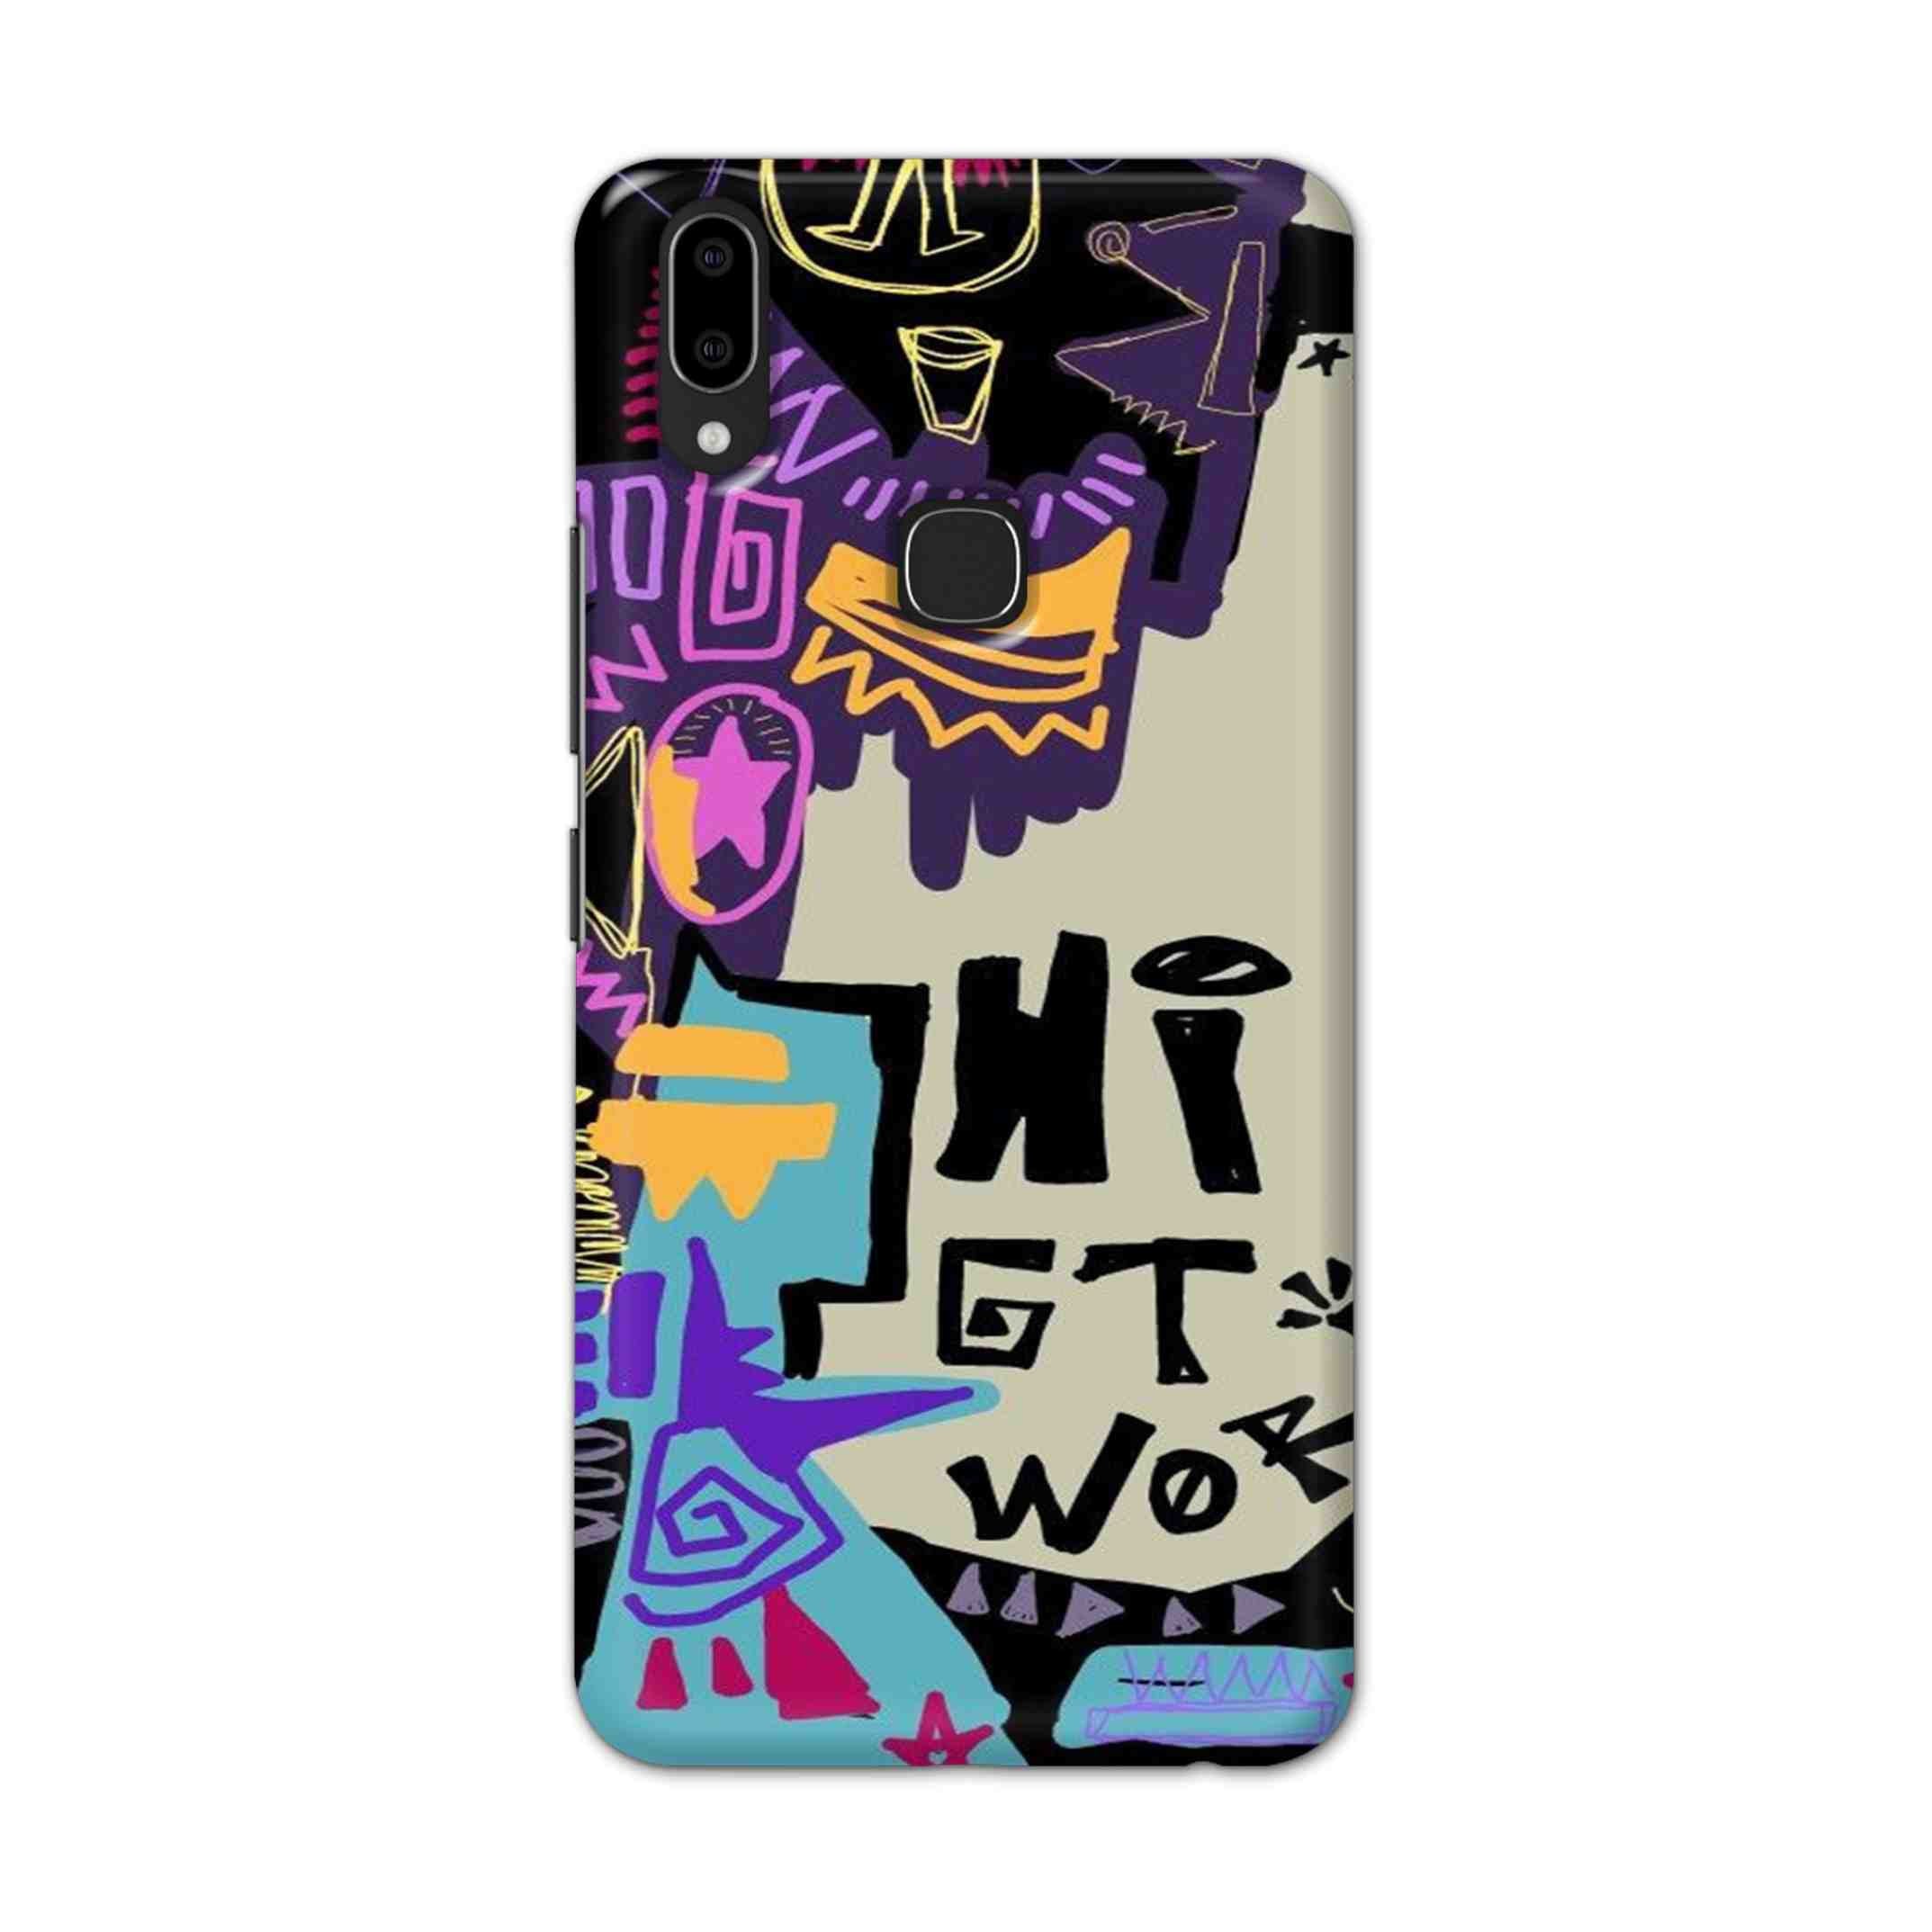 Buy Hi Gt World Hard Back Mobile Phone Case Cover For Vivo V9 / V9 Youth Online